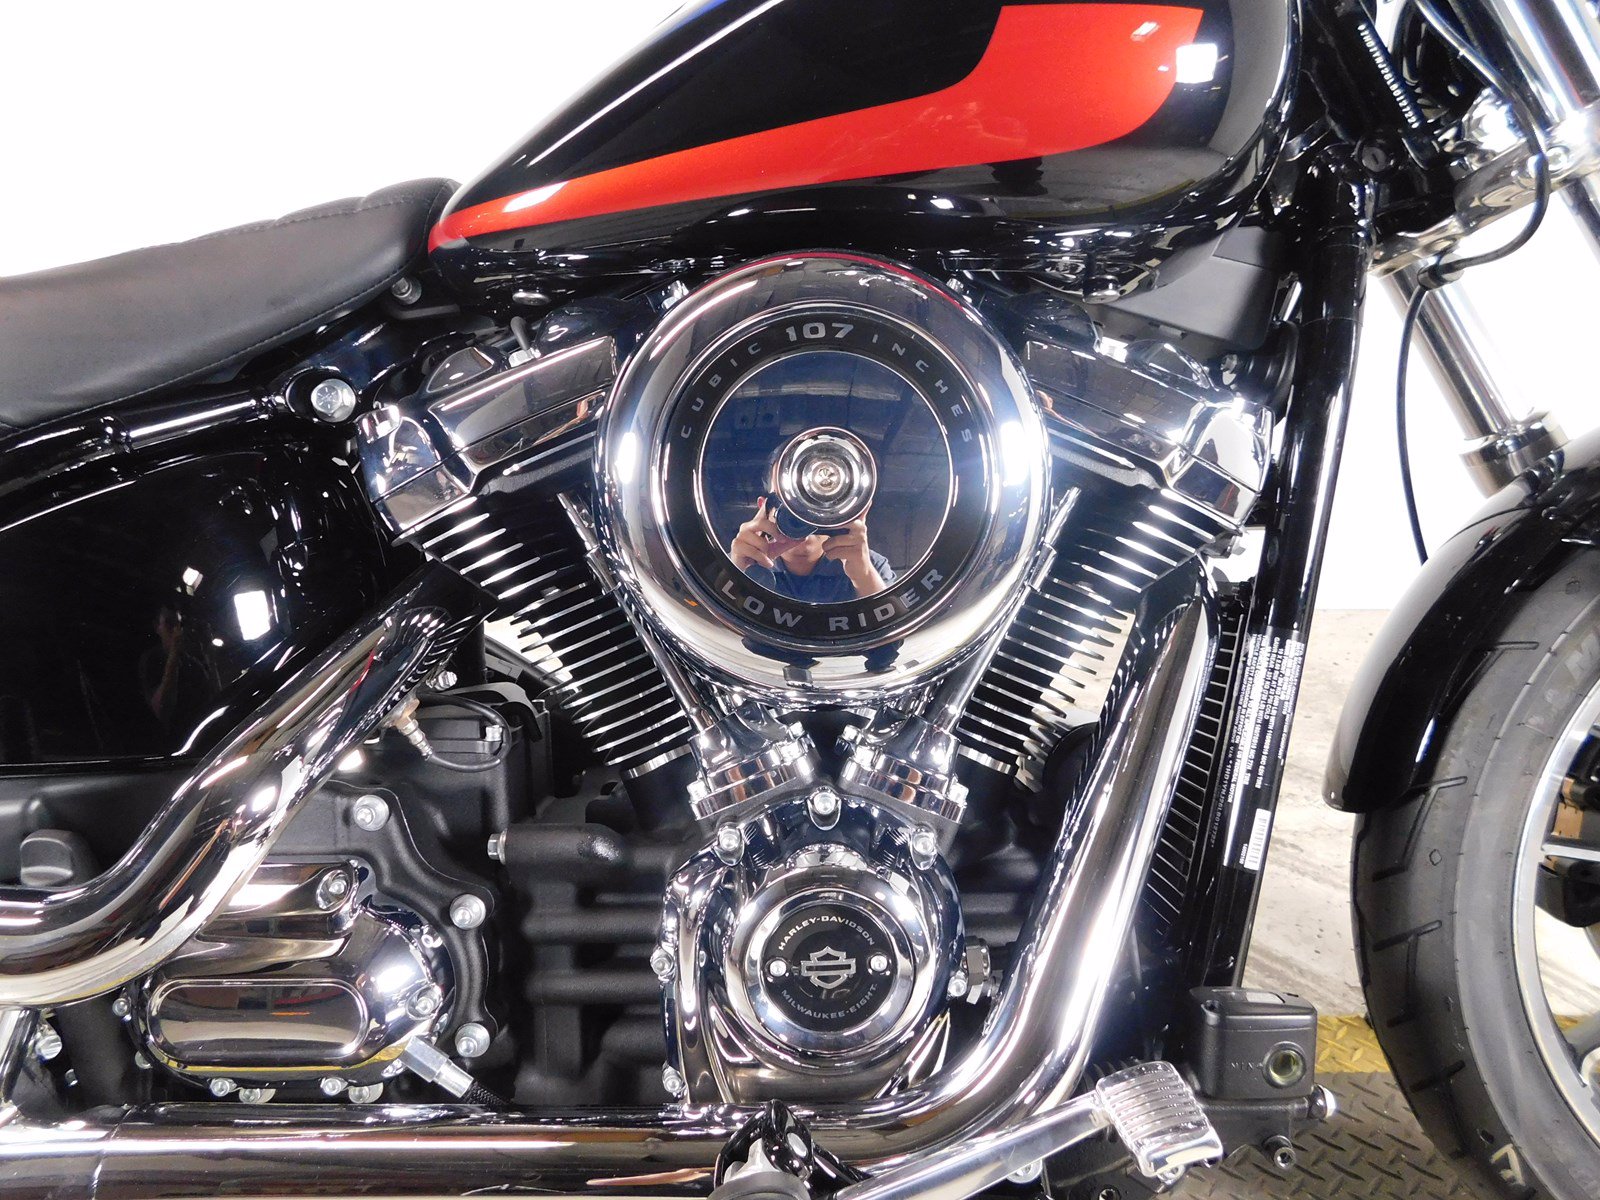 New 2020 Harley-Davidson Softail Low Rider FXLR Softail in ...